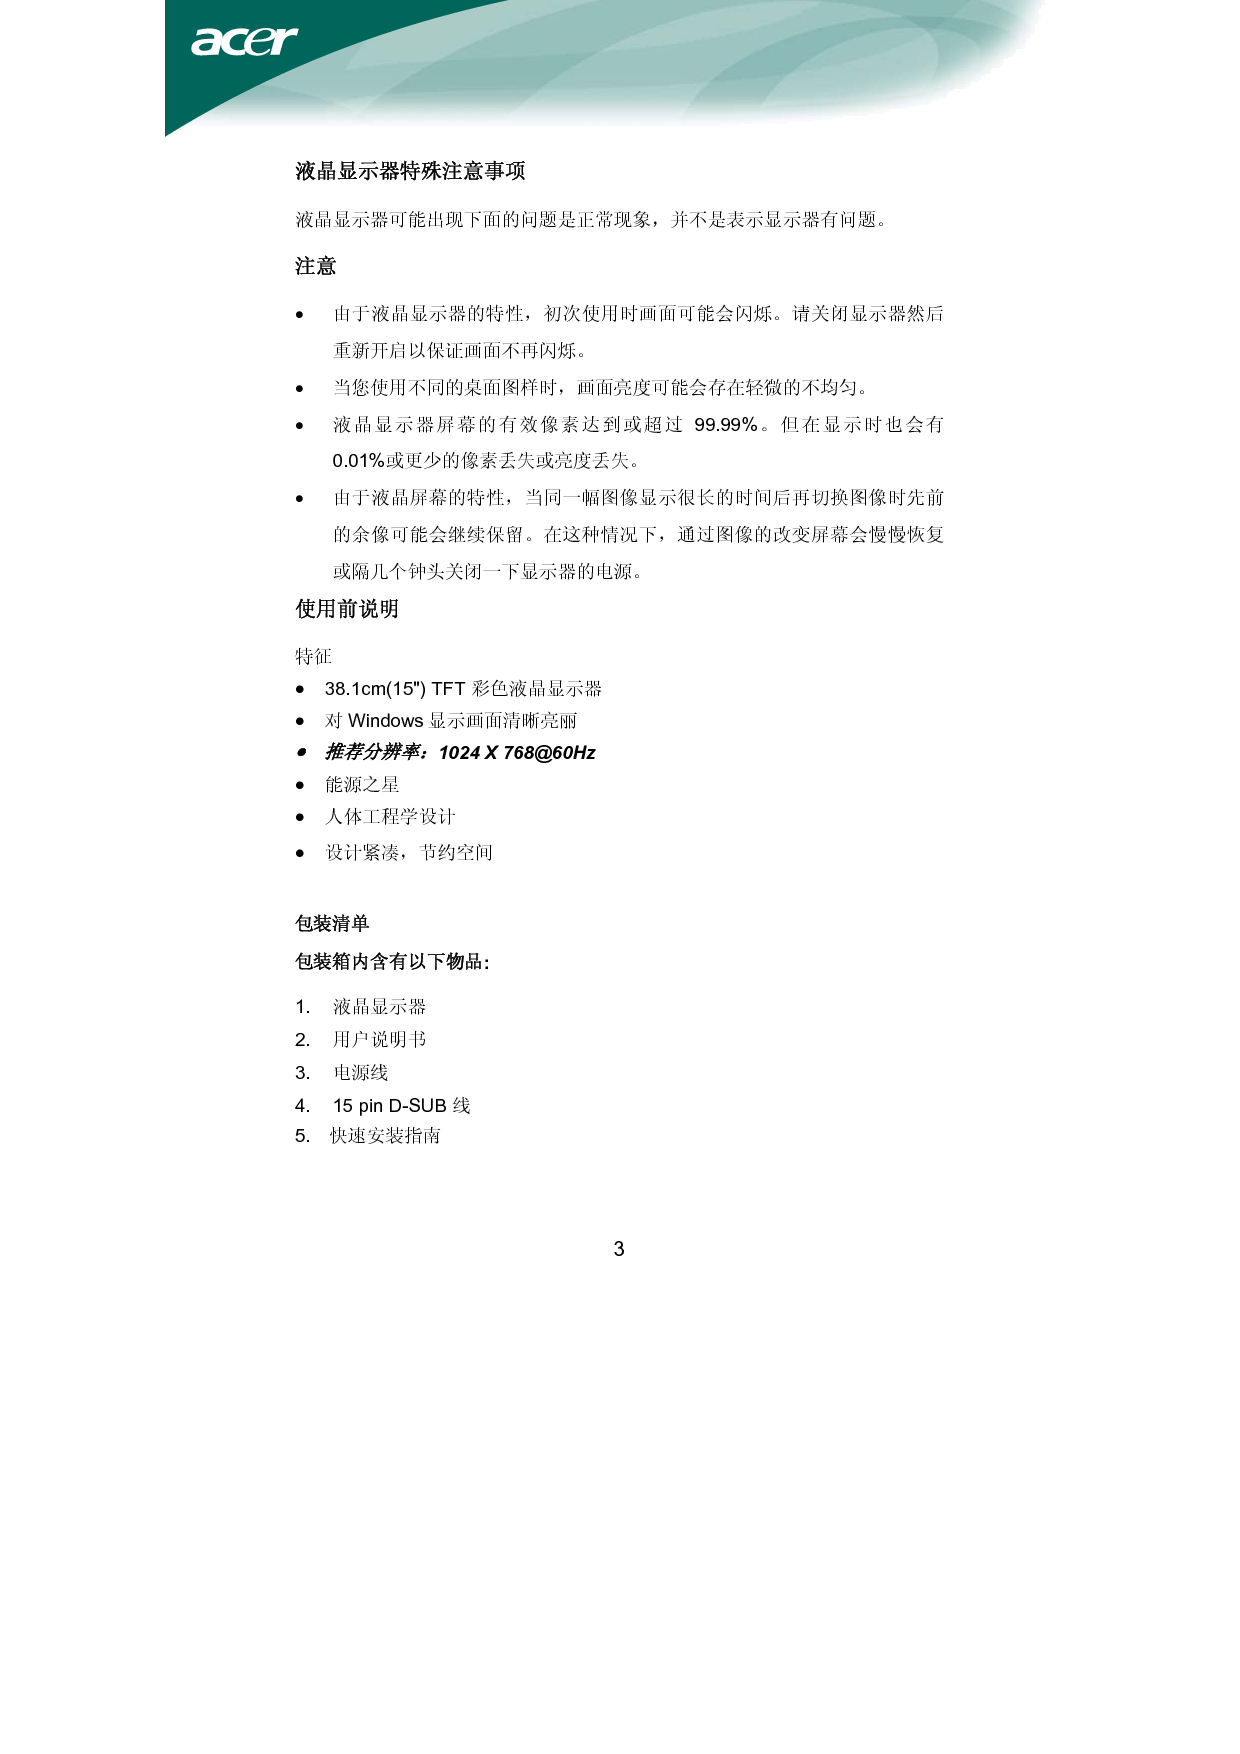 宏碁 Acer AL1516 用户手册 第3页